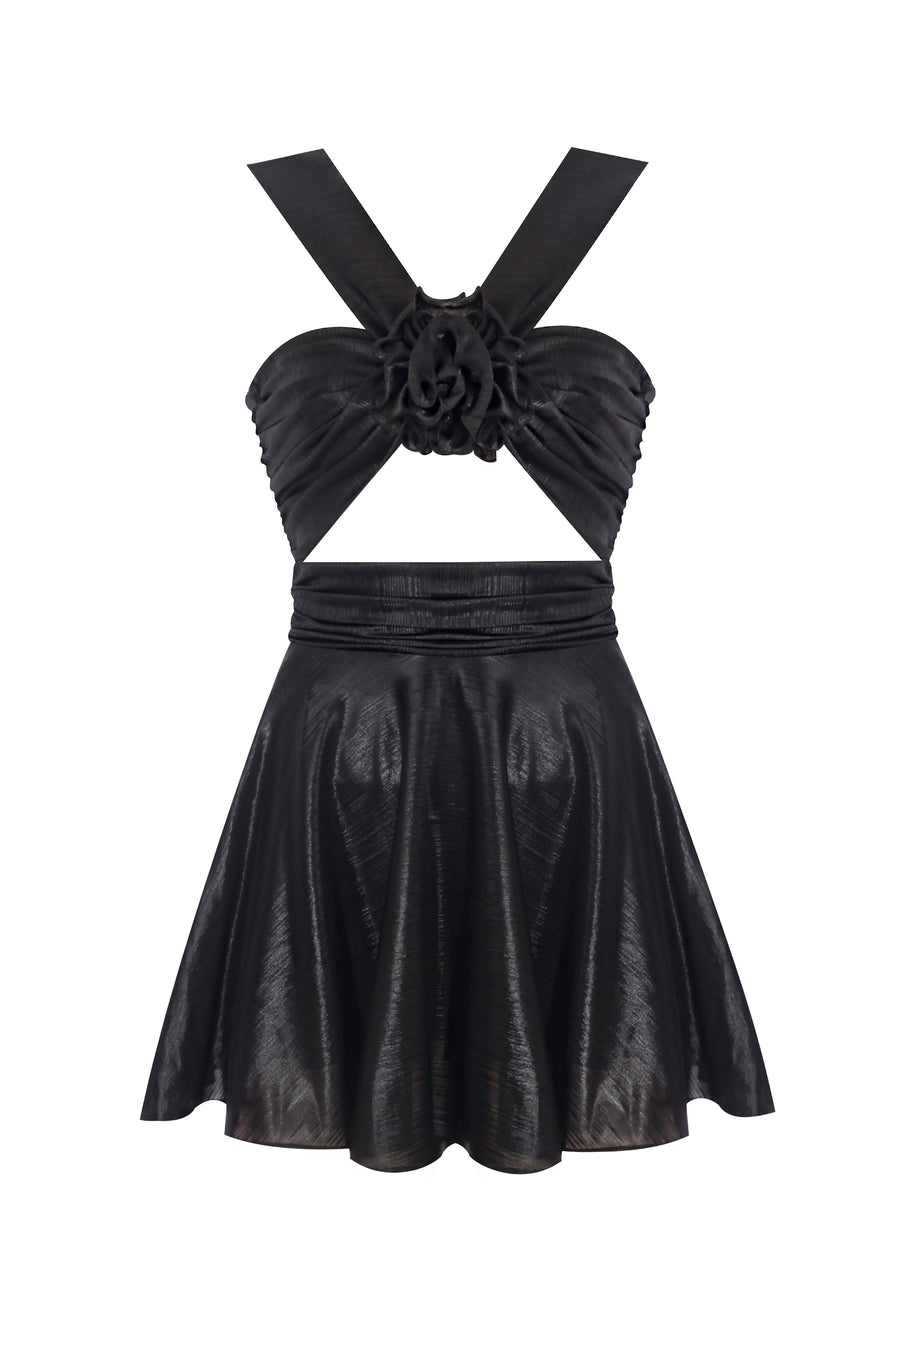 The Leia Shimmer Black Mini Dress